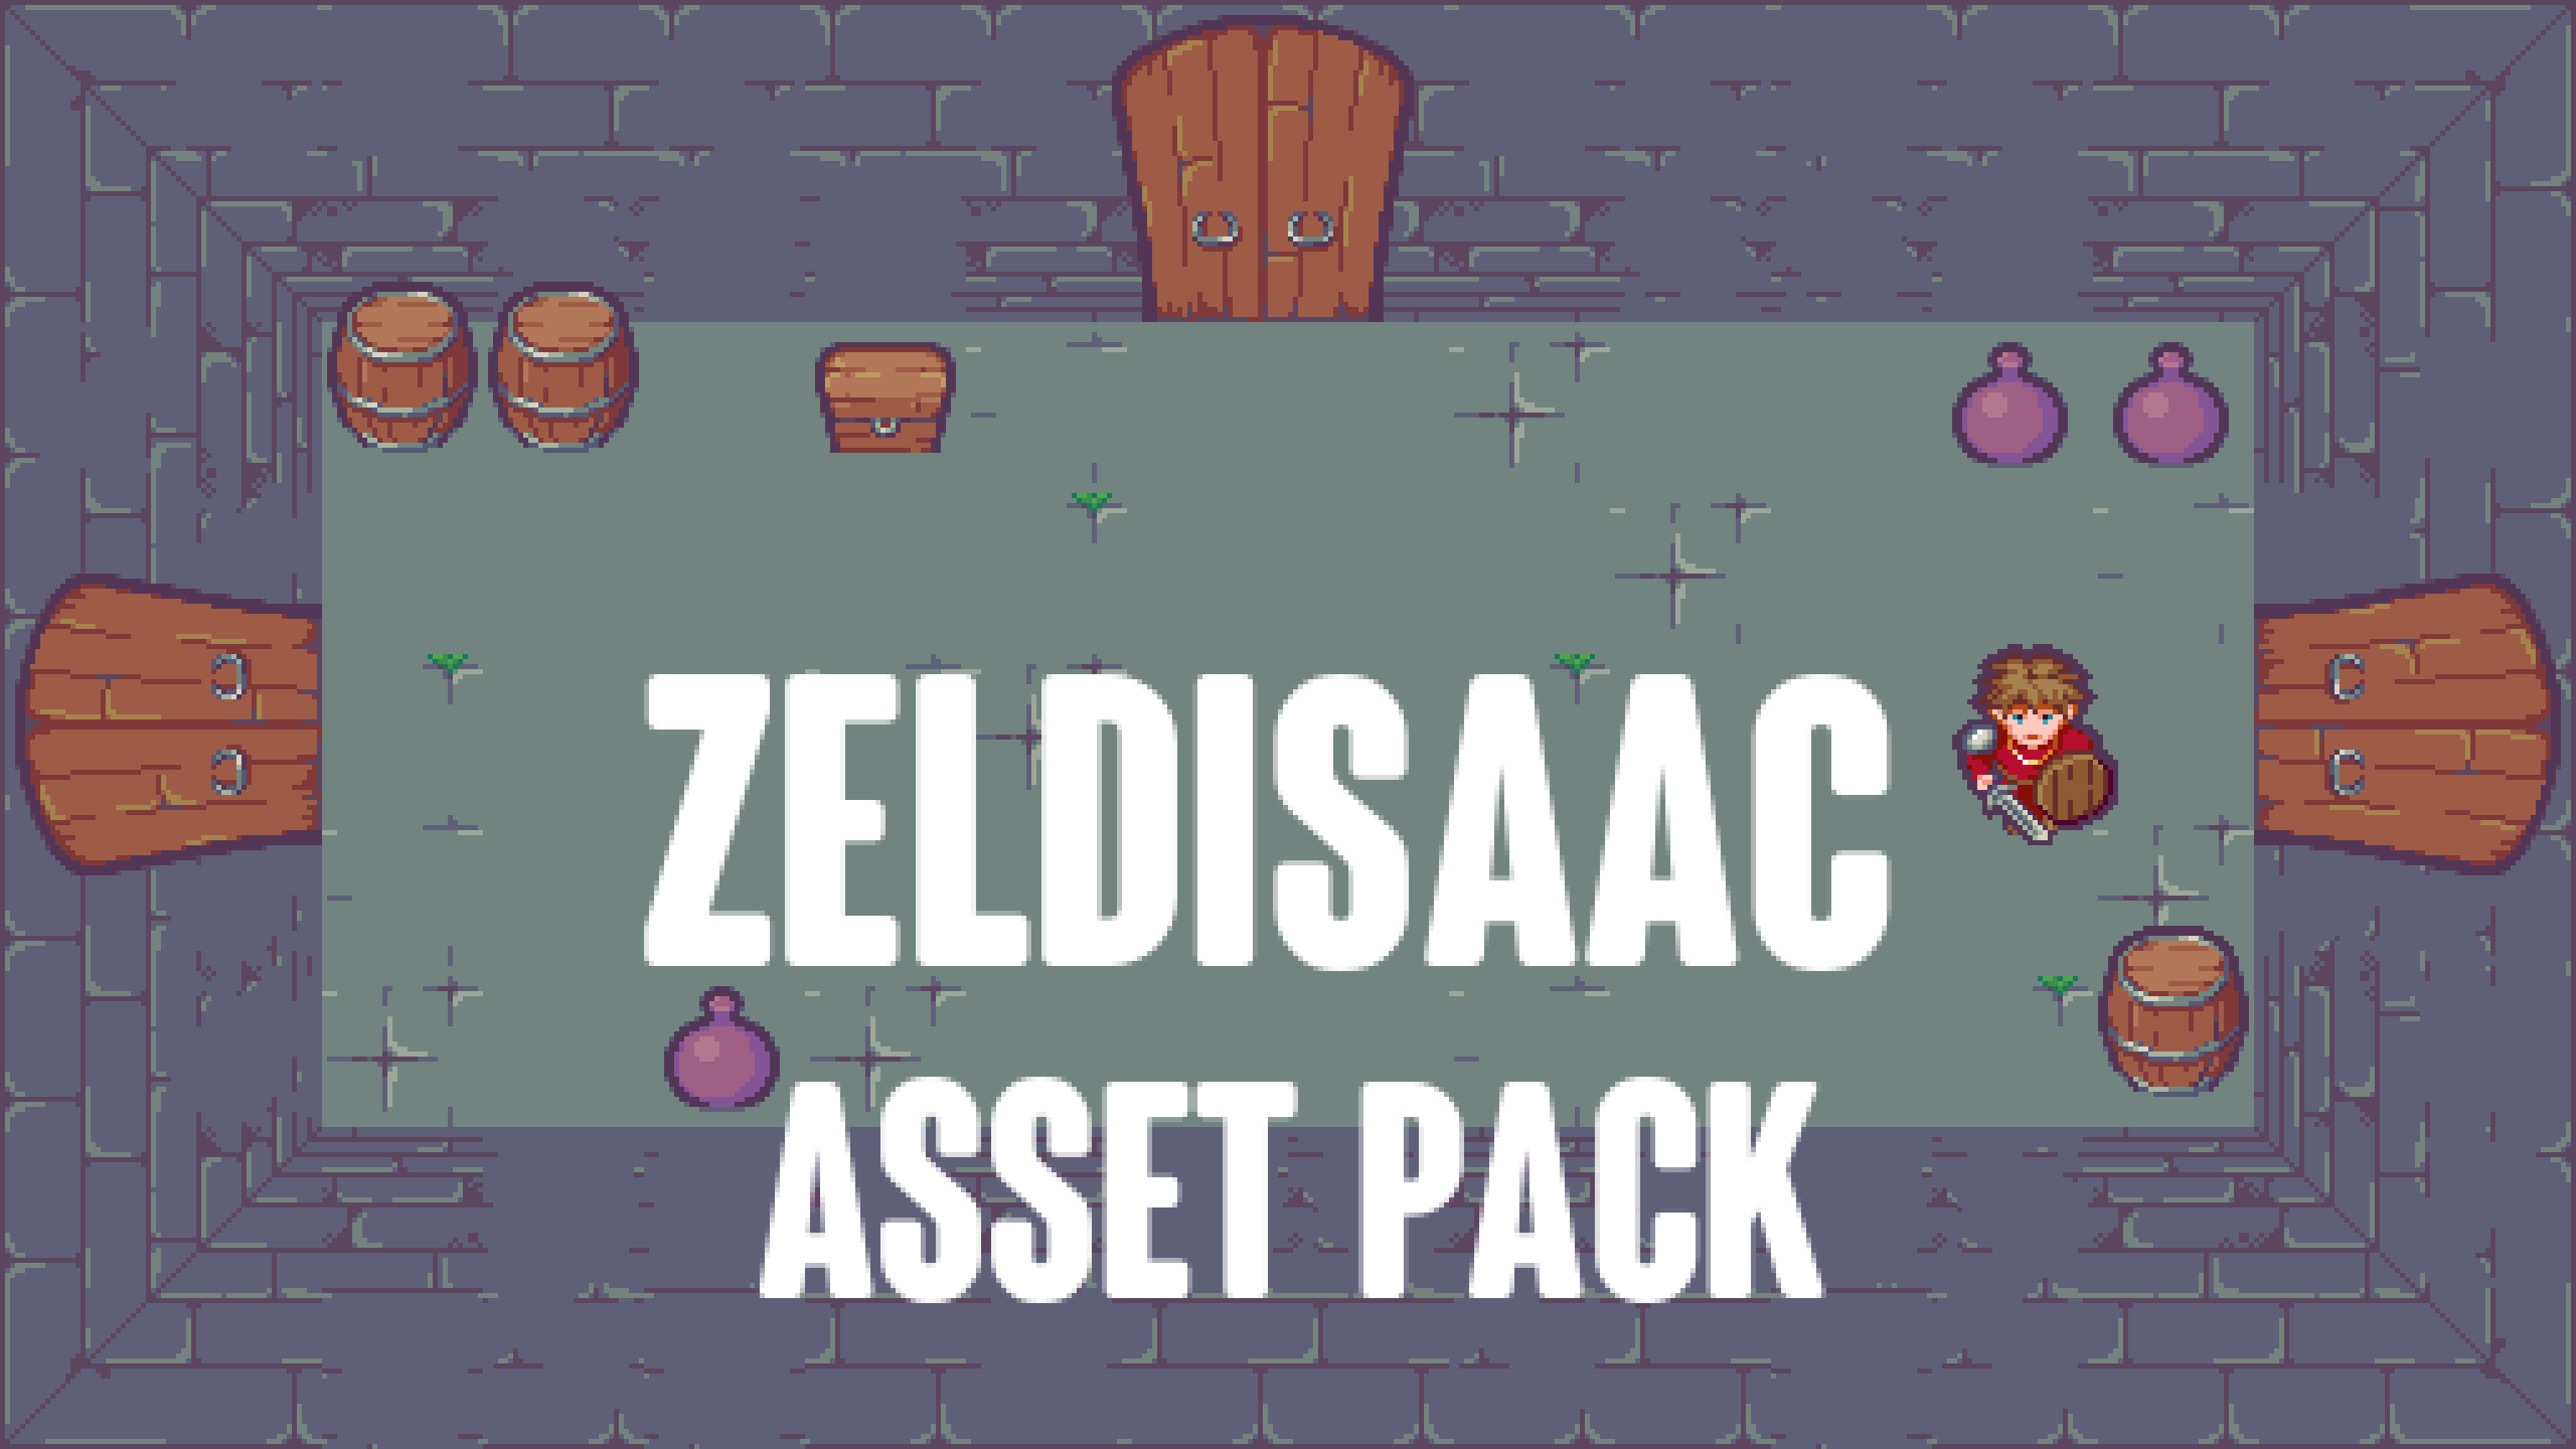 Zeldisaac asset pack